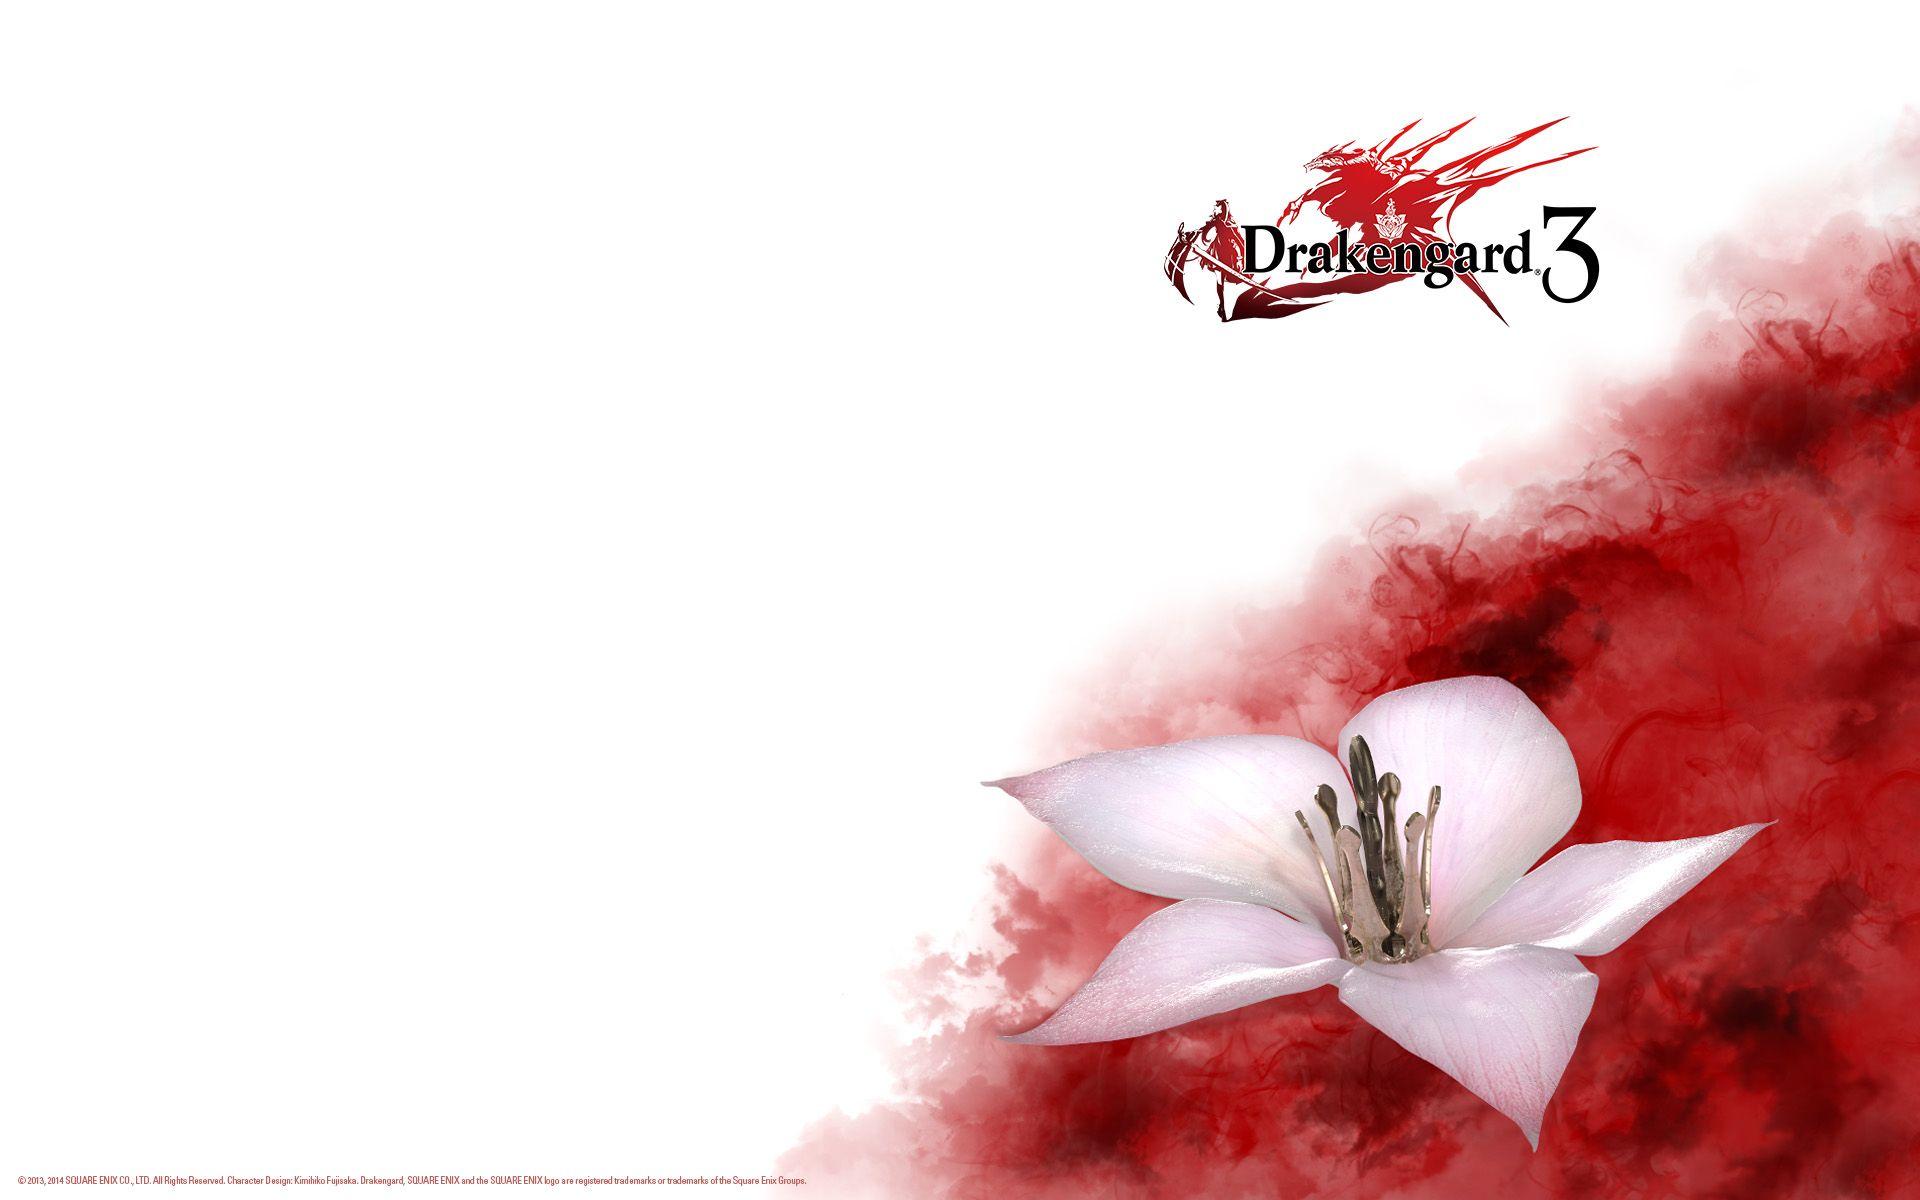 Drakengard 3 (2014) promotional art